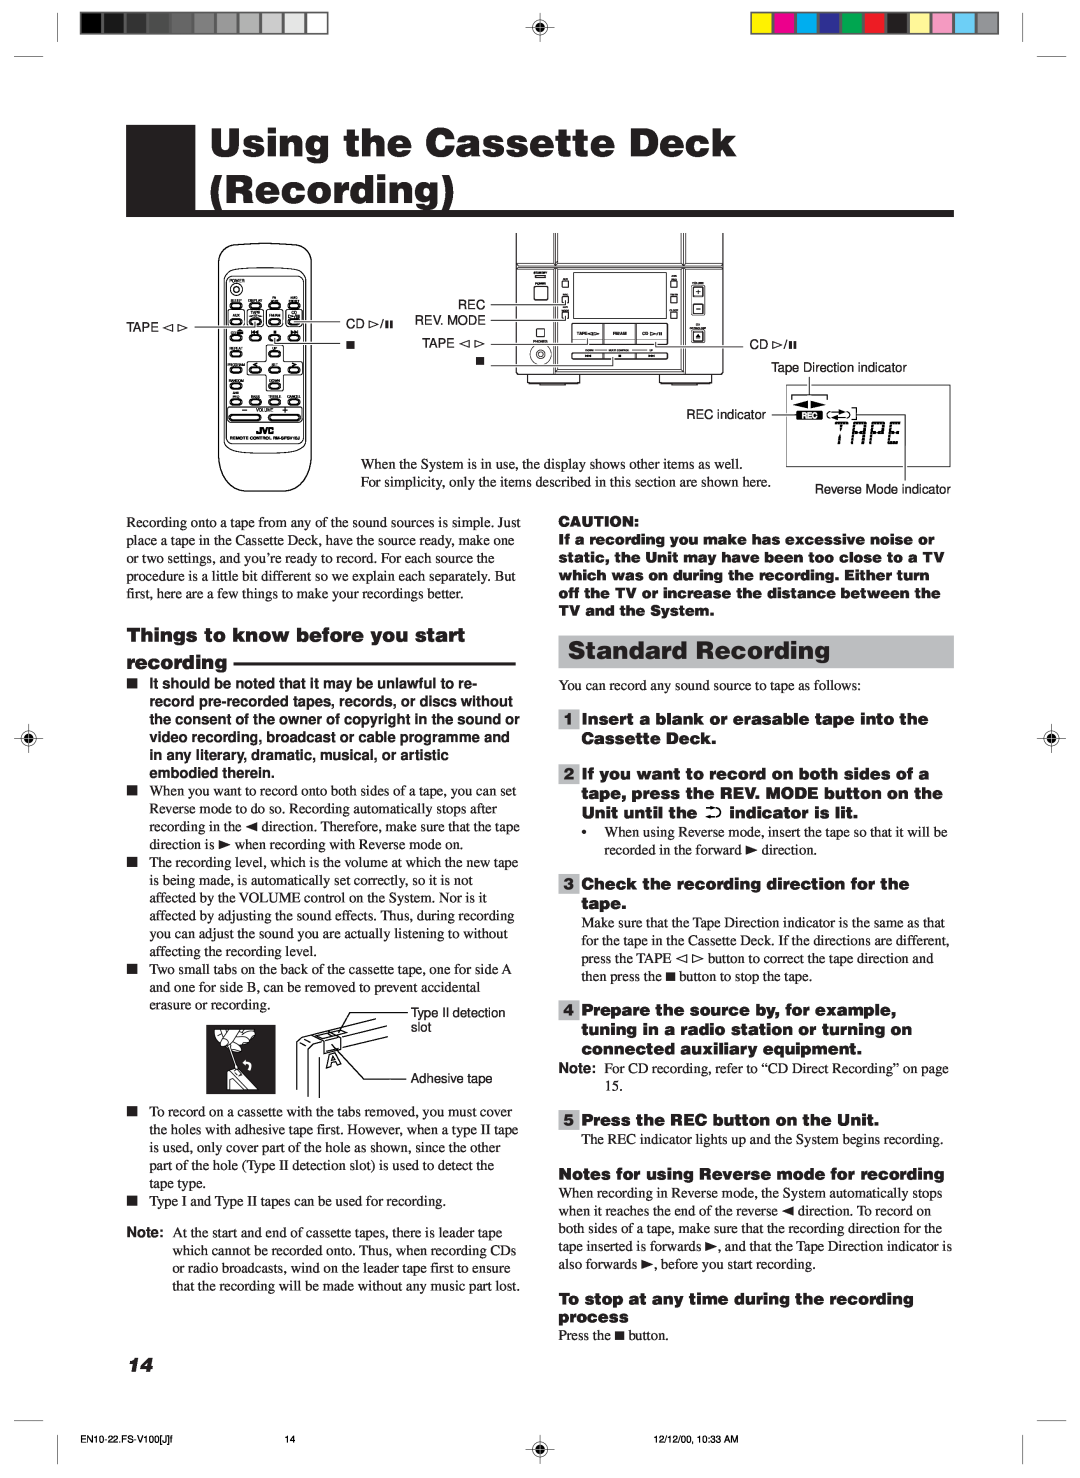 JVC FS-V100 manual Using the Cassette Deck Recording, Standard Recording, 3Check the recording direction for the tape 